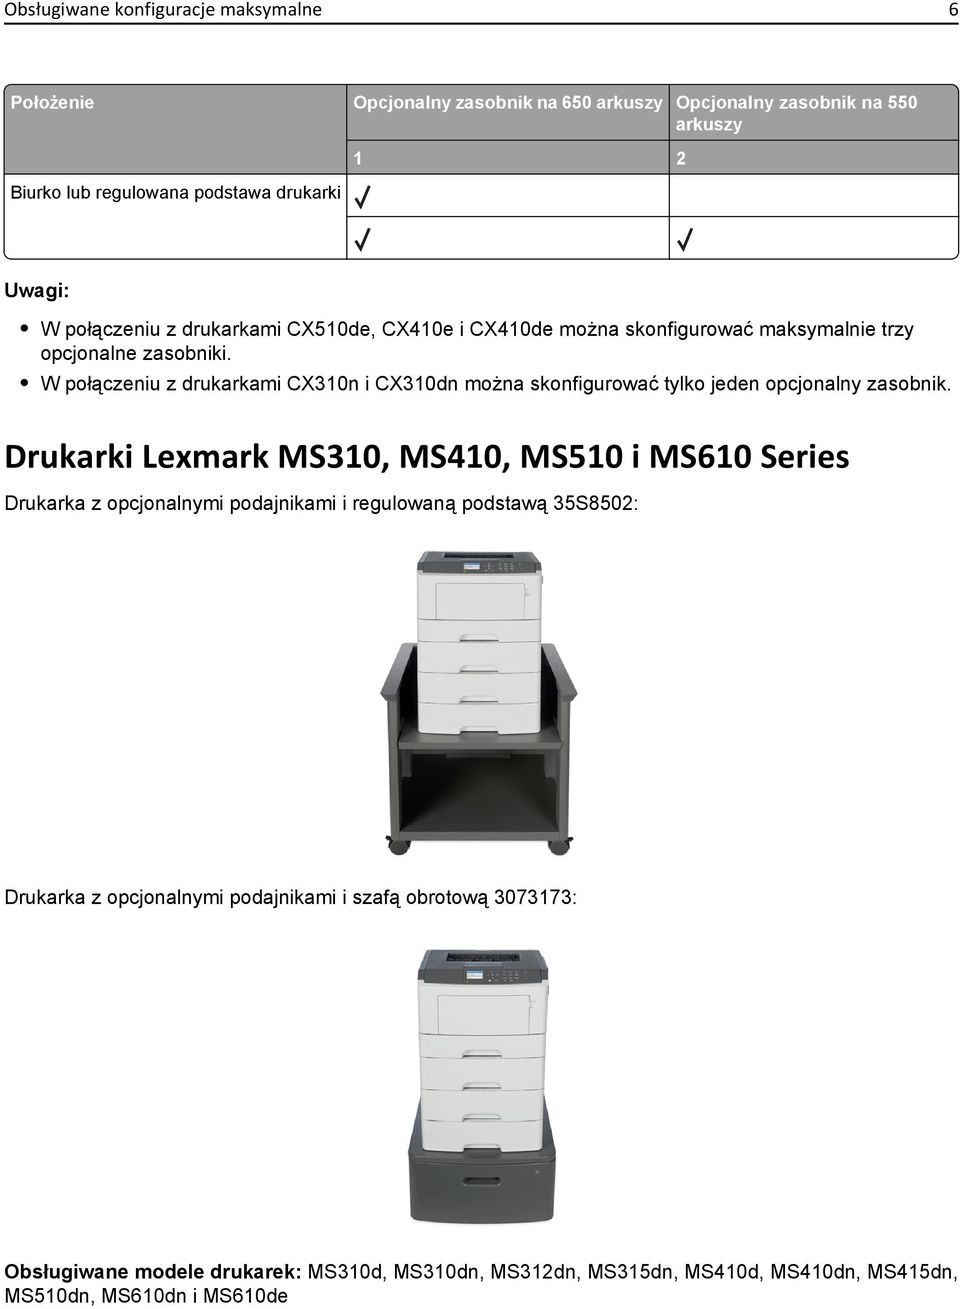 W połączeniu z drukarkami CX310n i CX310dn można skonfigurować tylko jeden opcjonalny zasobnik.